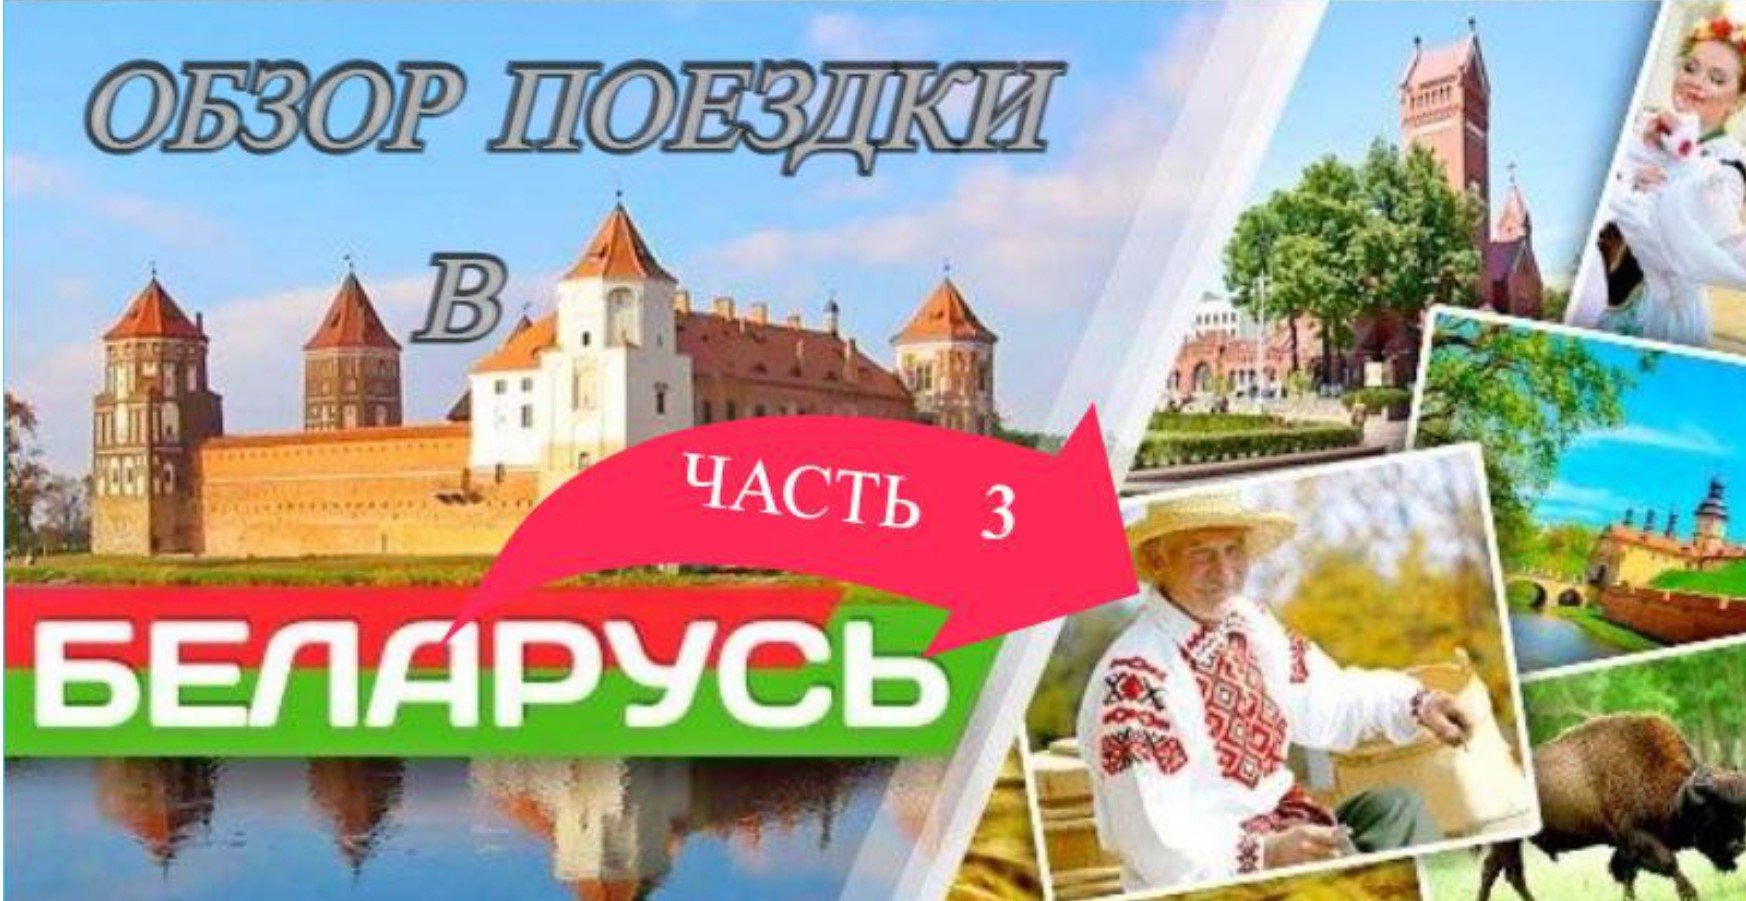 Обзор поездки в Беларусь Часть 3